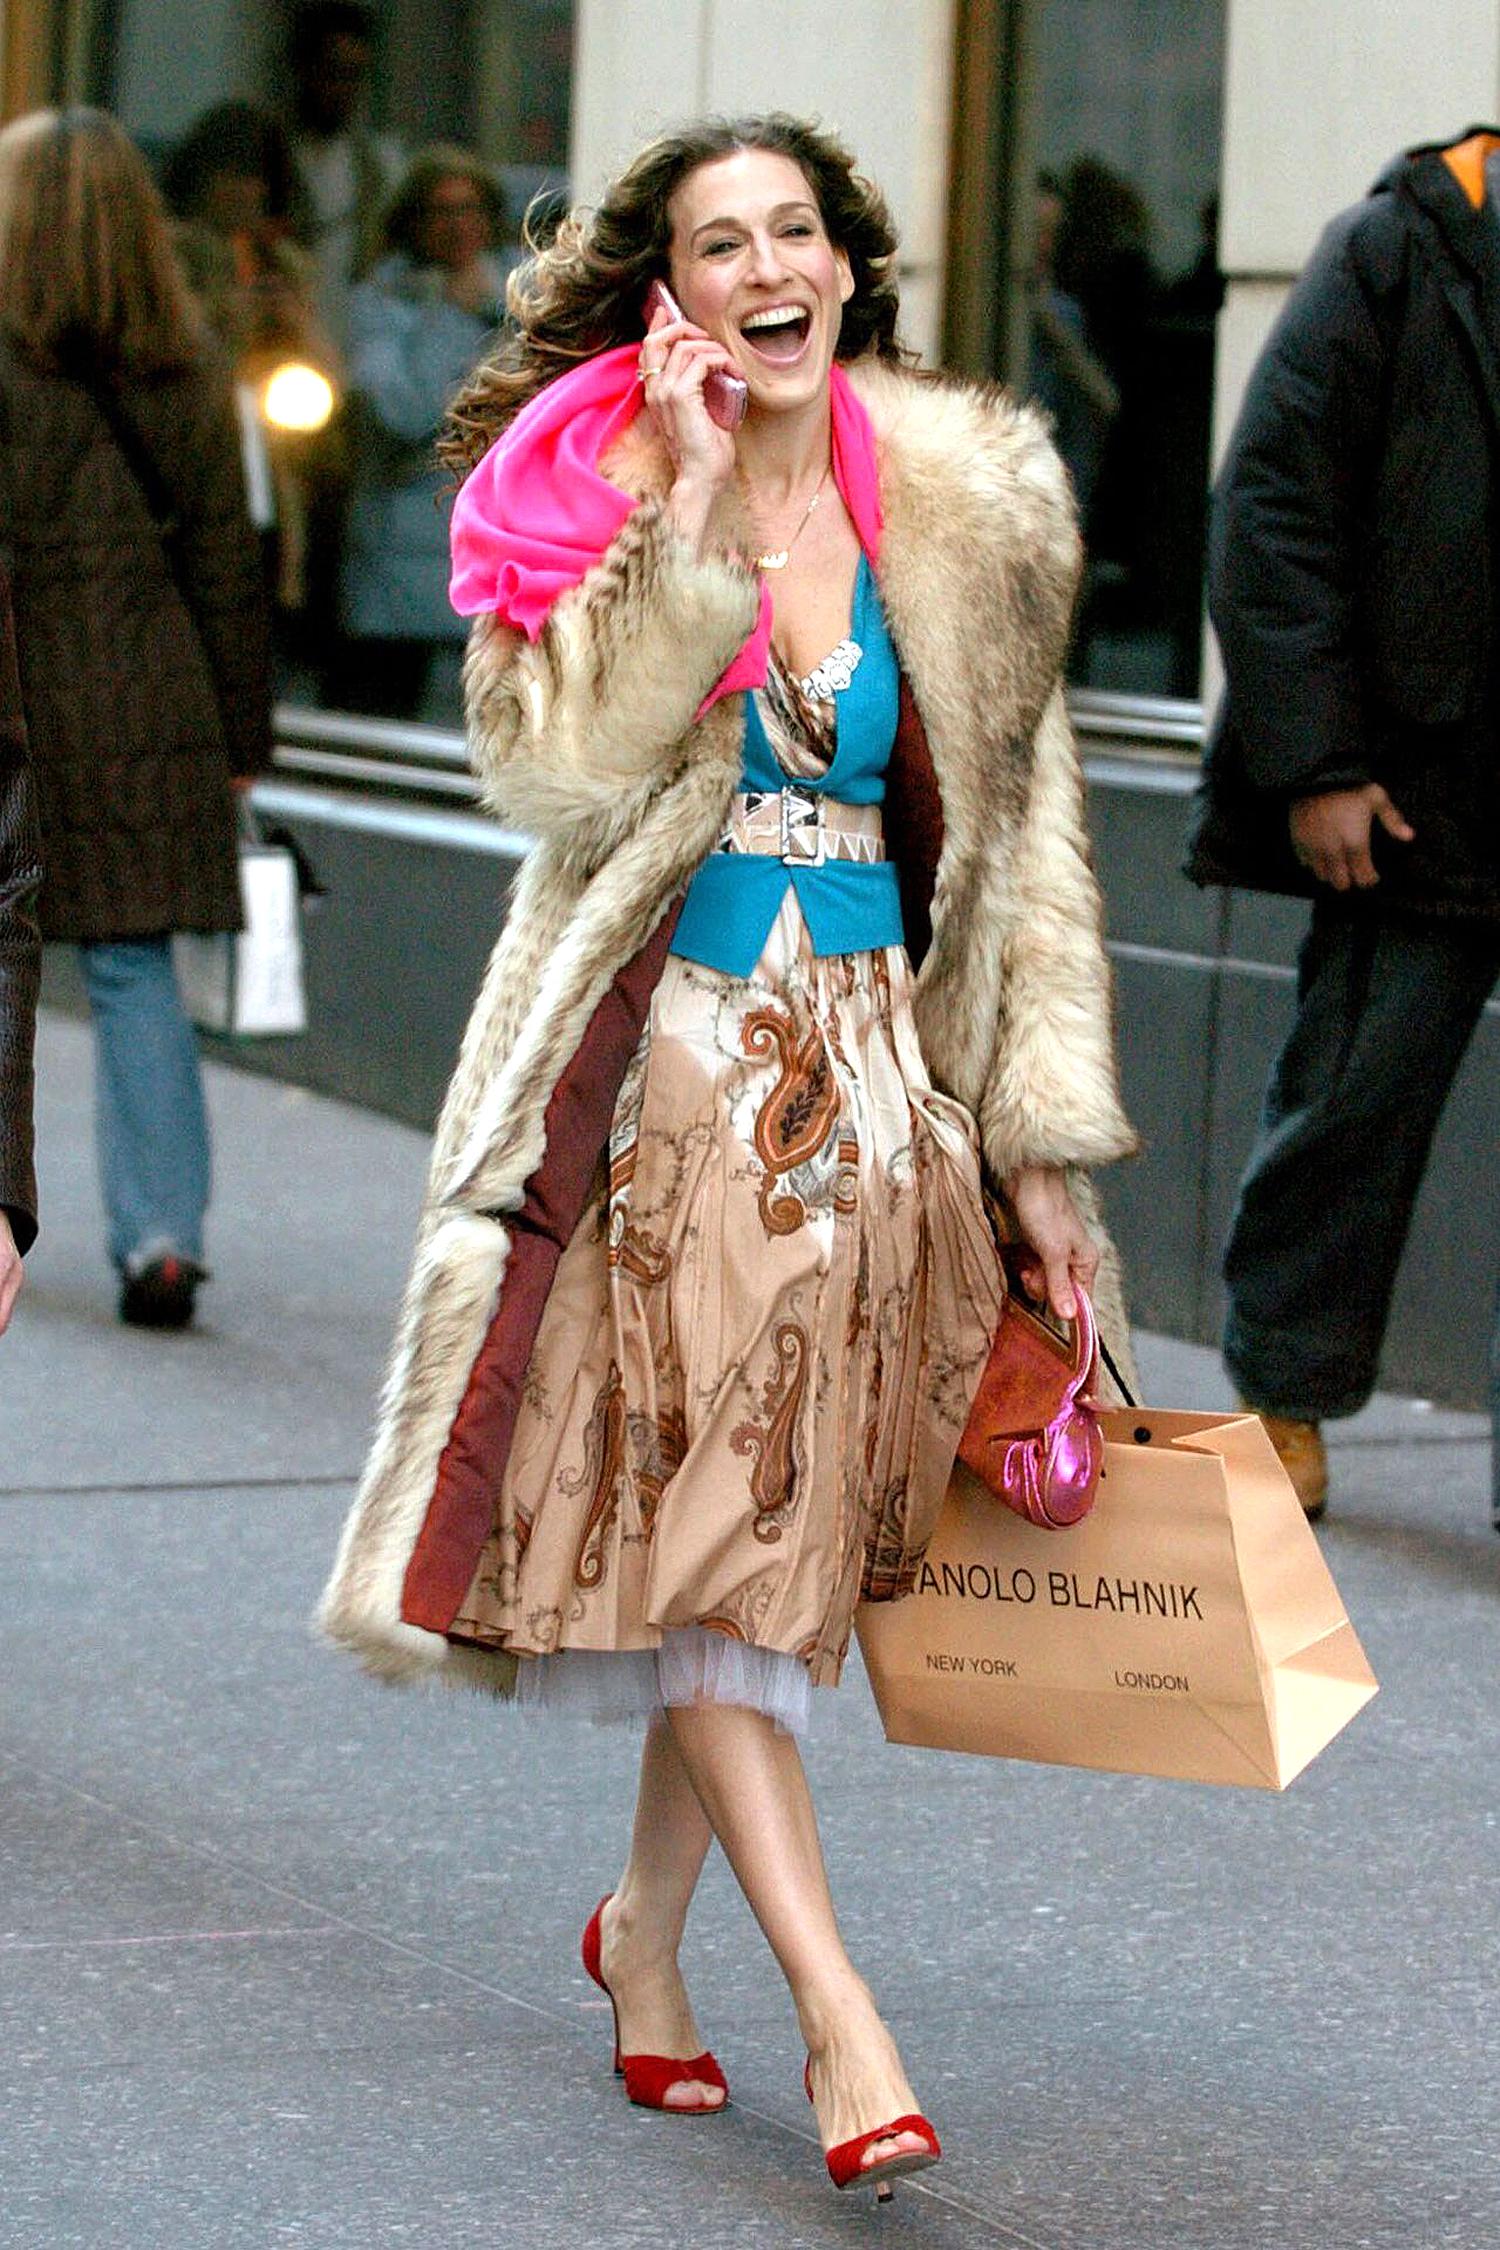 Gucci Bamboo Blooms Handbags- Springtime Fever Already!